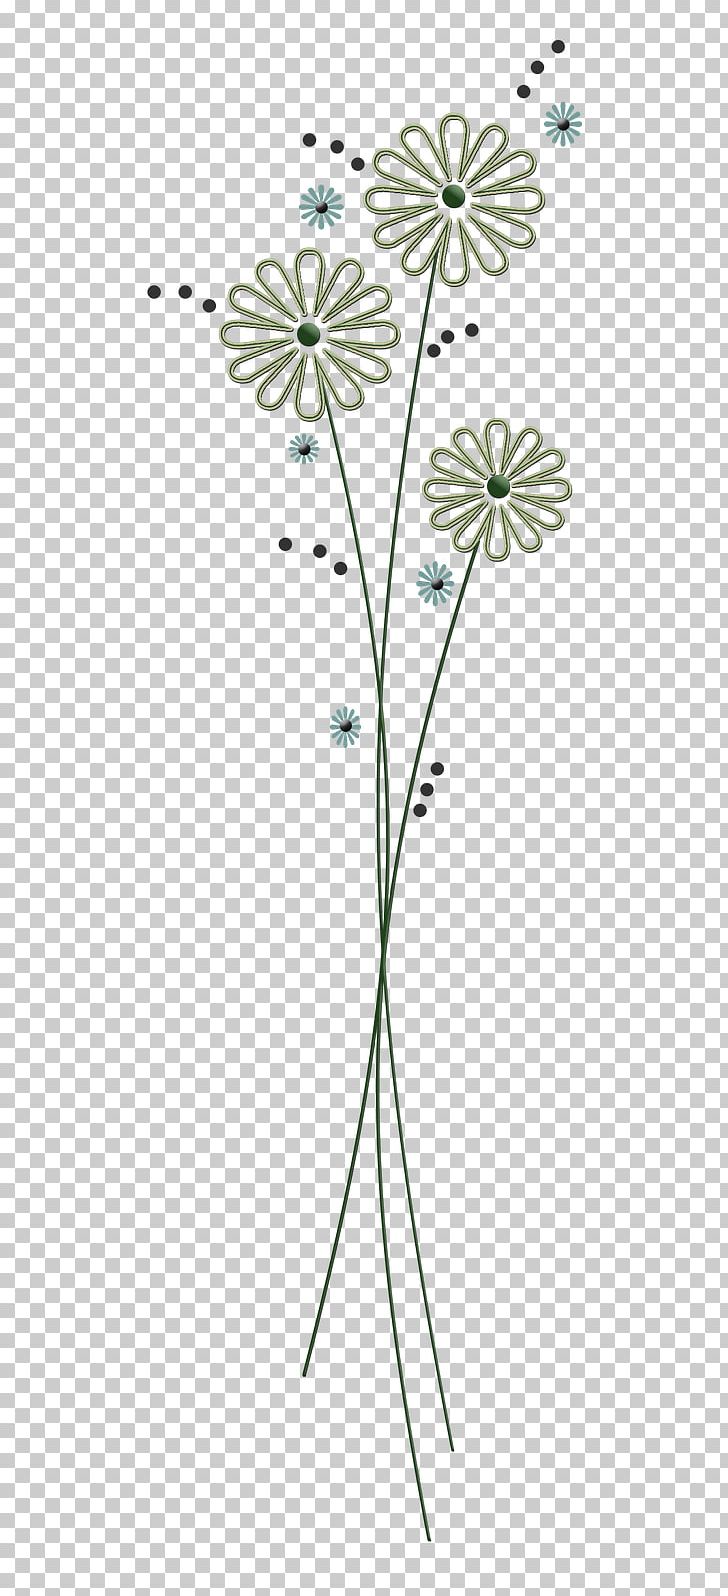 Floral Design Floral Design Symmetry Flowering Plant PNG, Clipart, Angle, Art, Branch, Flora, Floral Design Free PNG Download